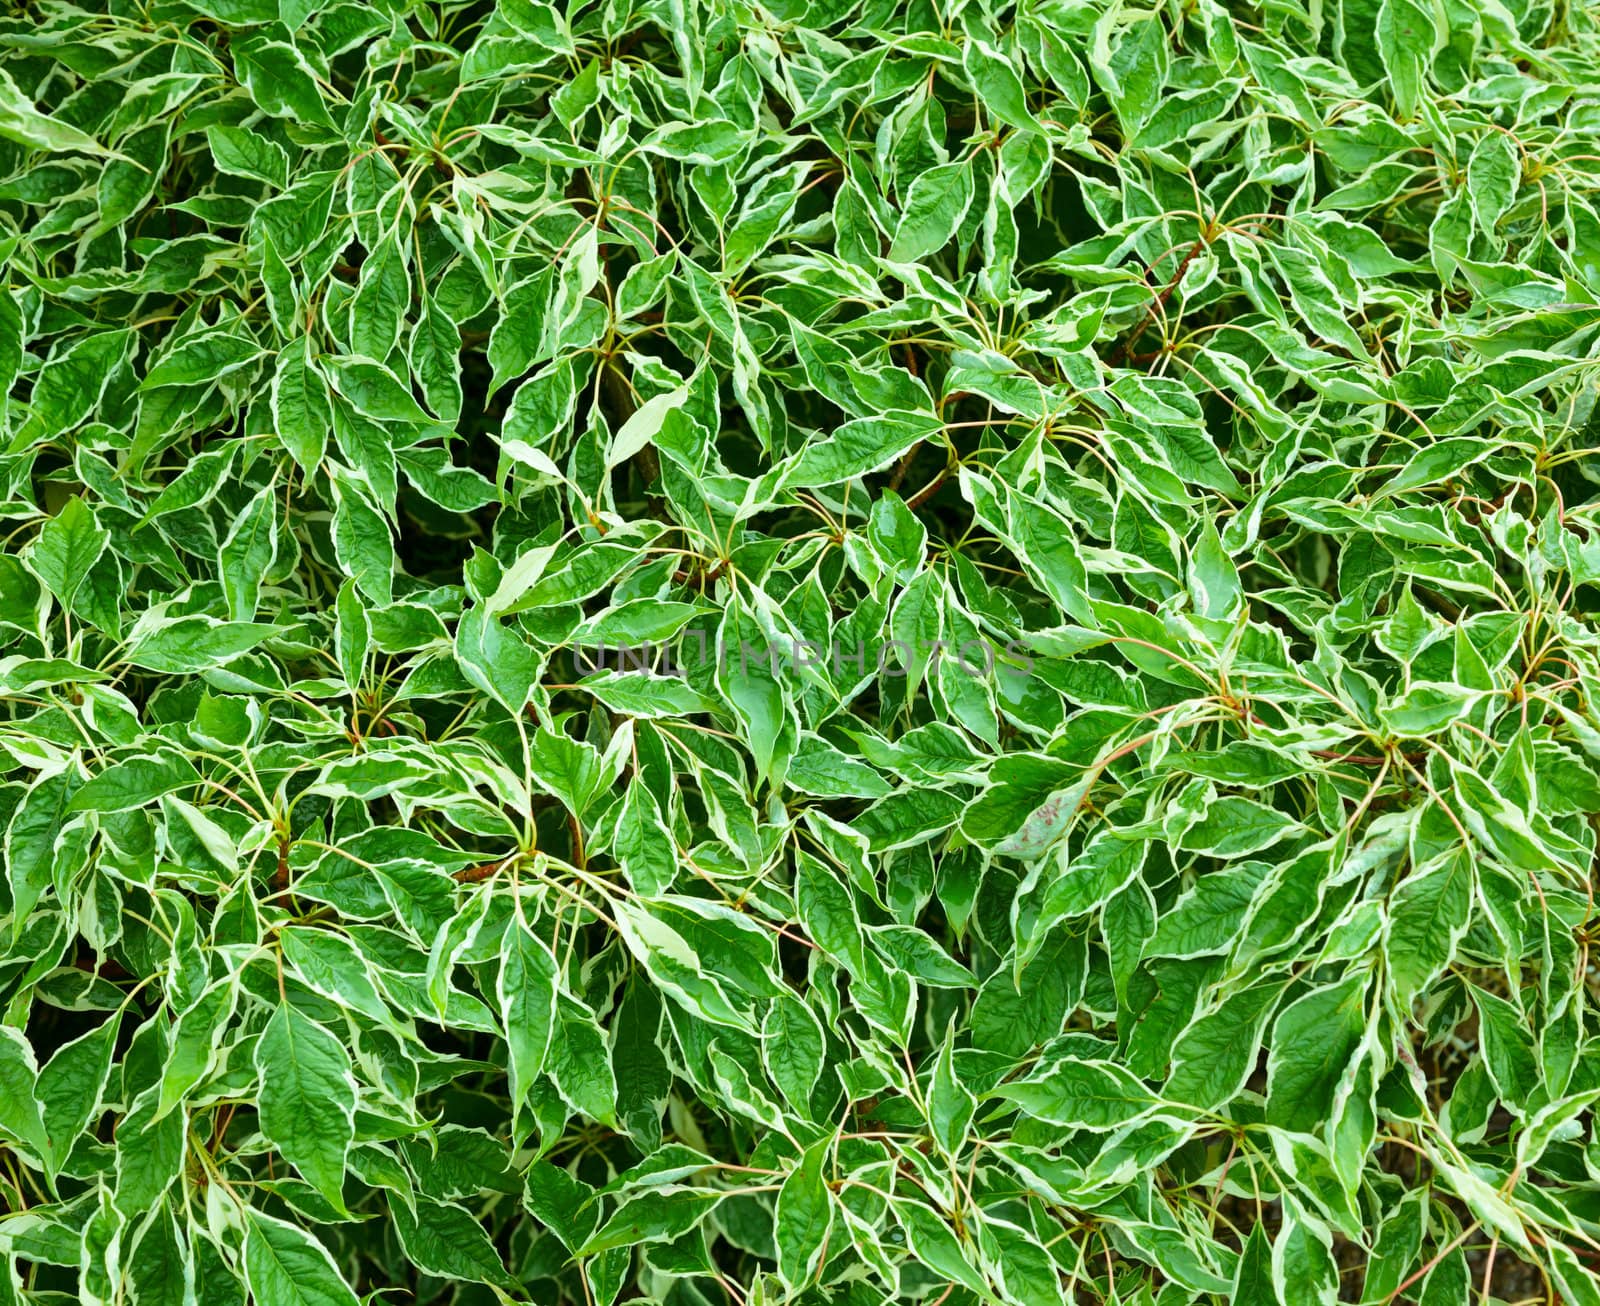 Green leaves by naumoid